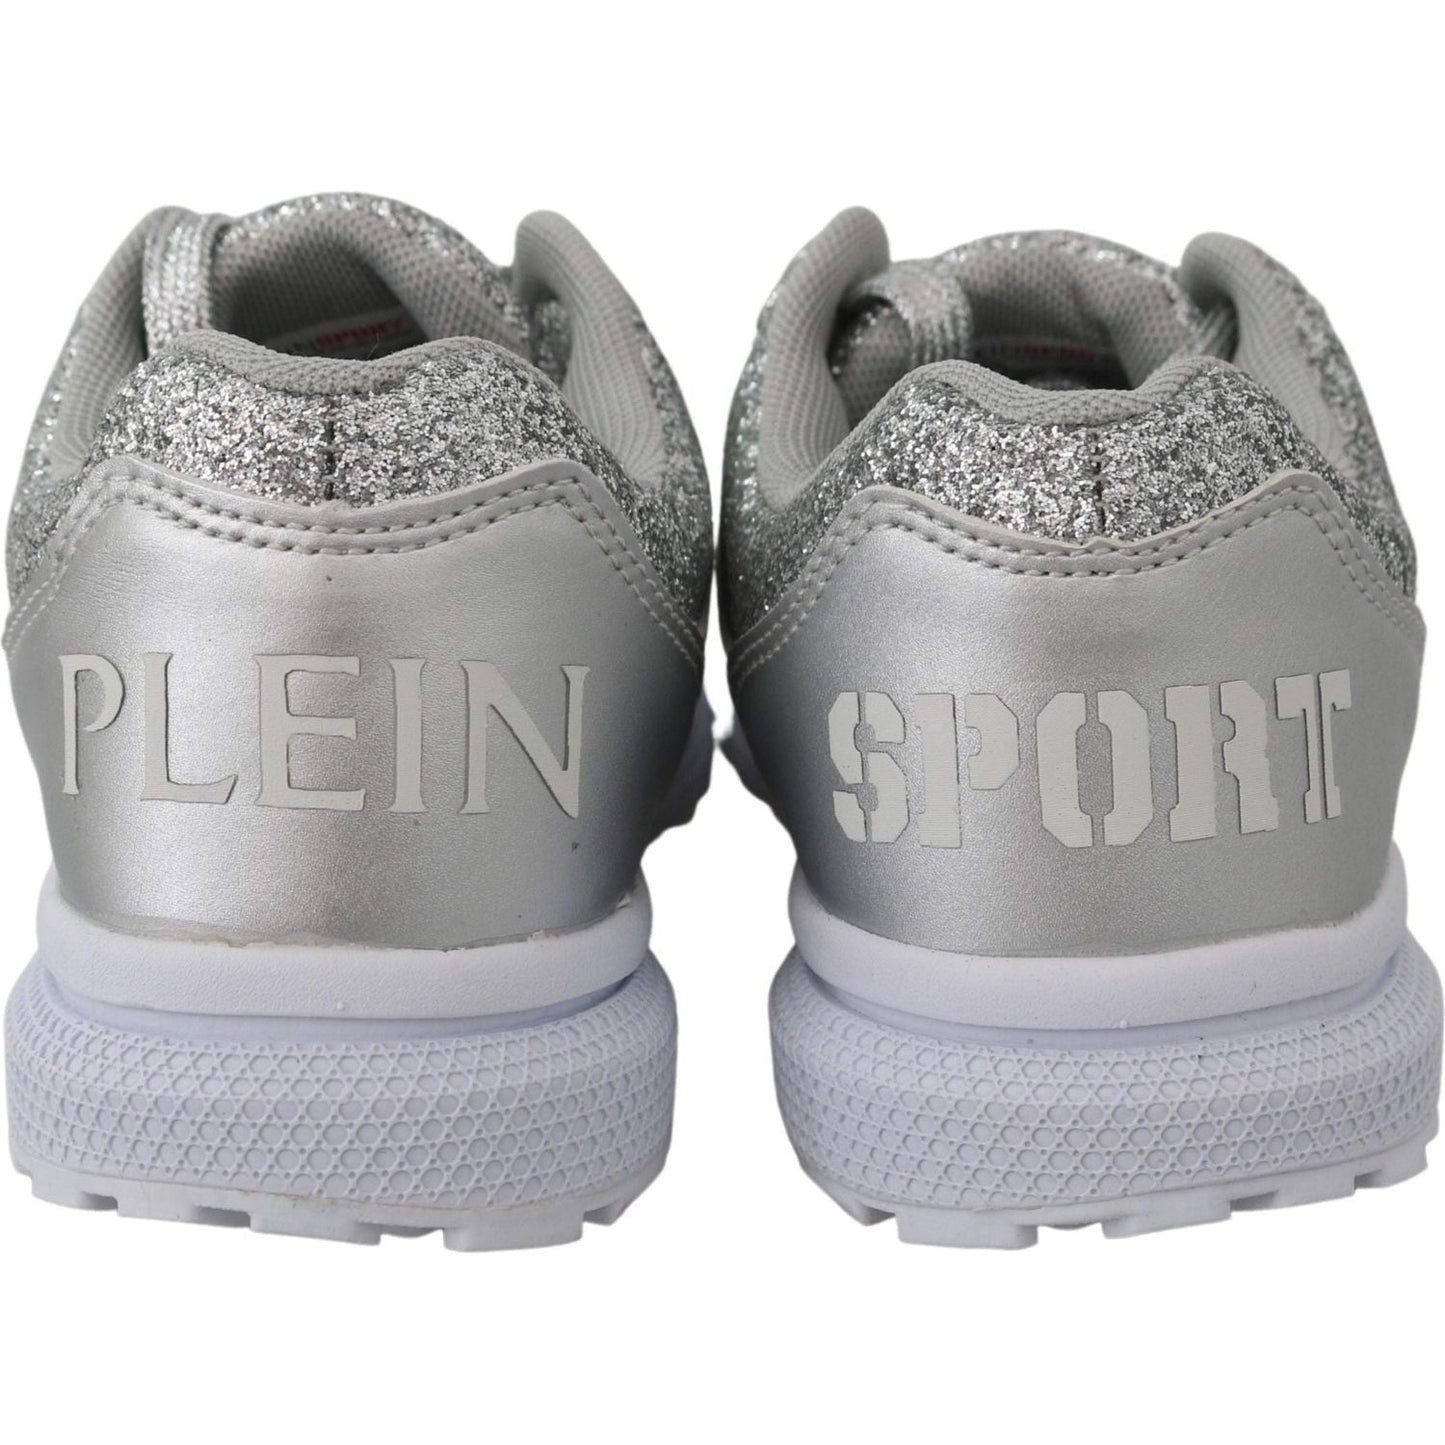 Plein SportChic Silver Runner Jasmines SneakersMcRichard Designer Brands£159.00